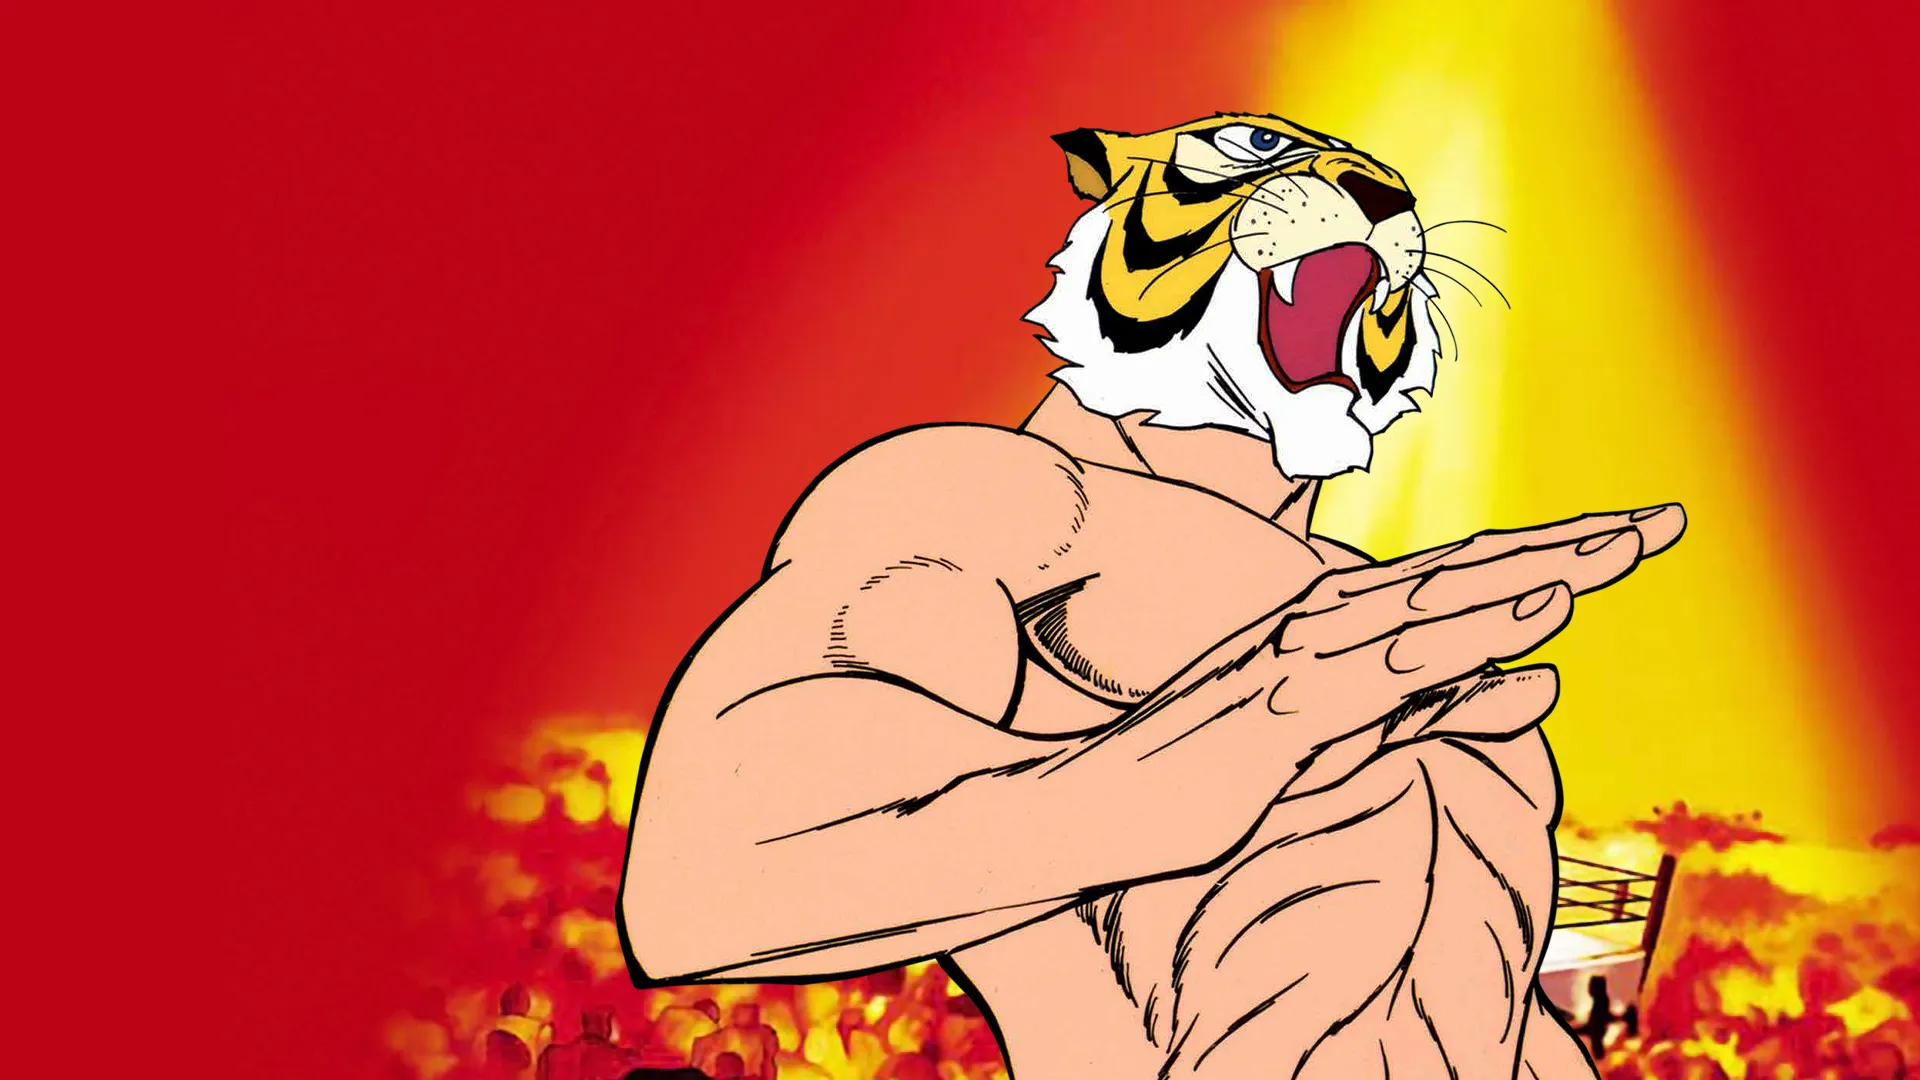 L’Uomo Tigre: un eroe mascherato tra lotta e giustizia